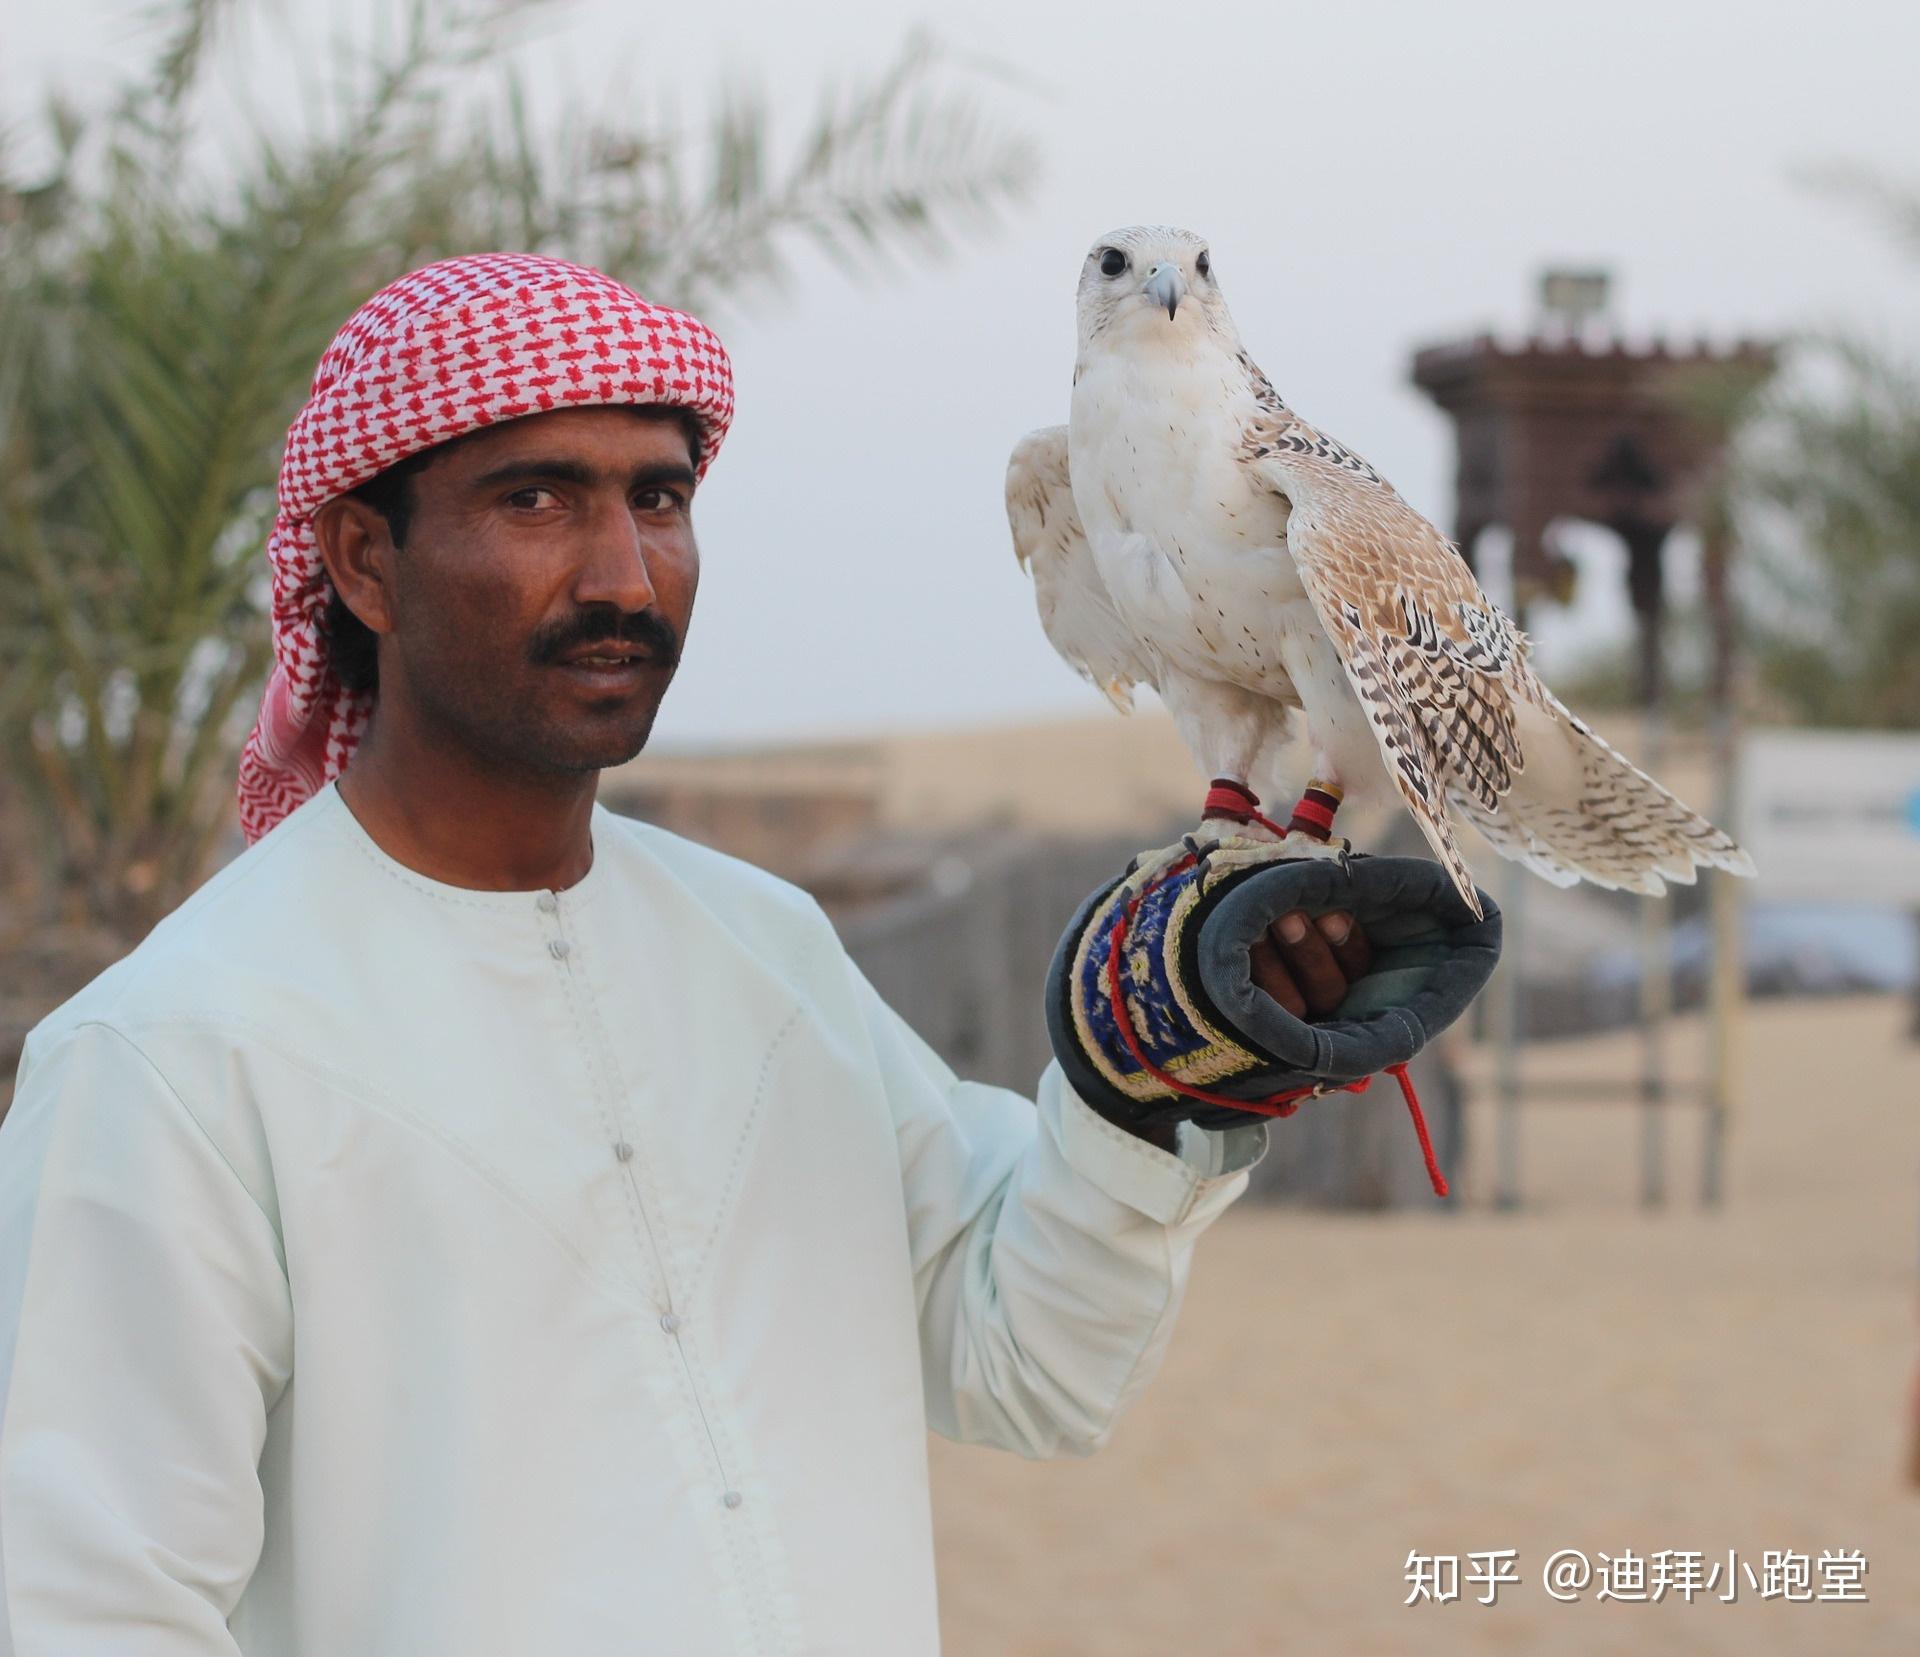 传统服装的人在迪拜emirati 库存图片. 图片 包括有 酋长管辖区, 走道, 地平线, 人员, 生活方式 - 211855589